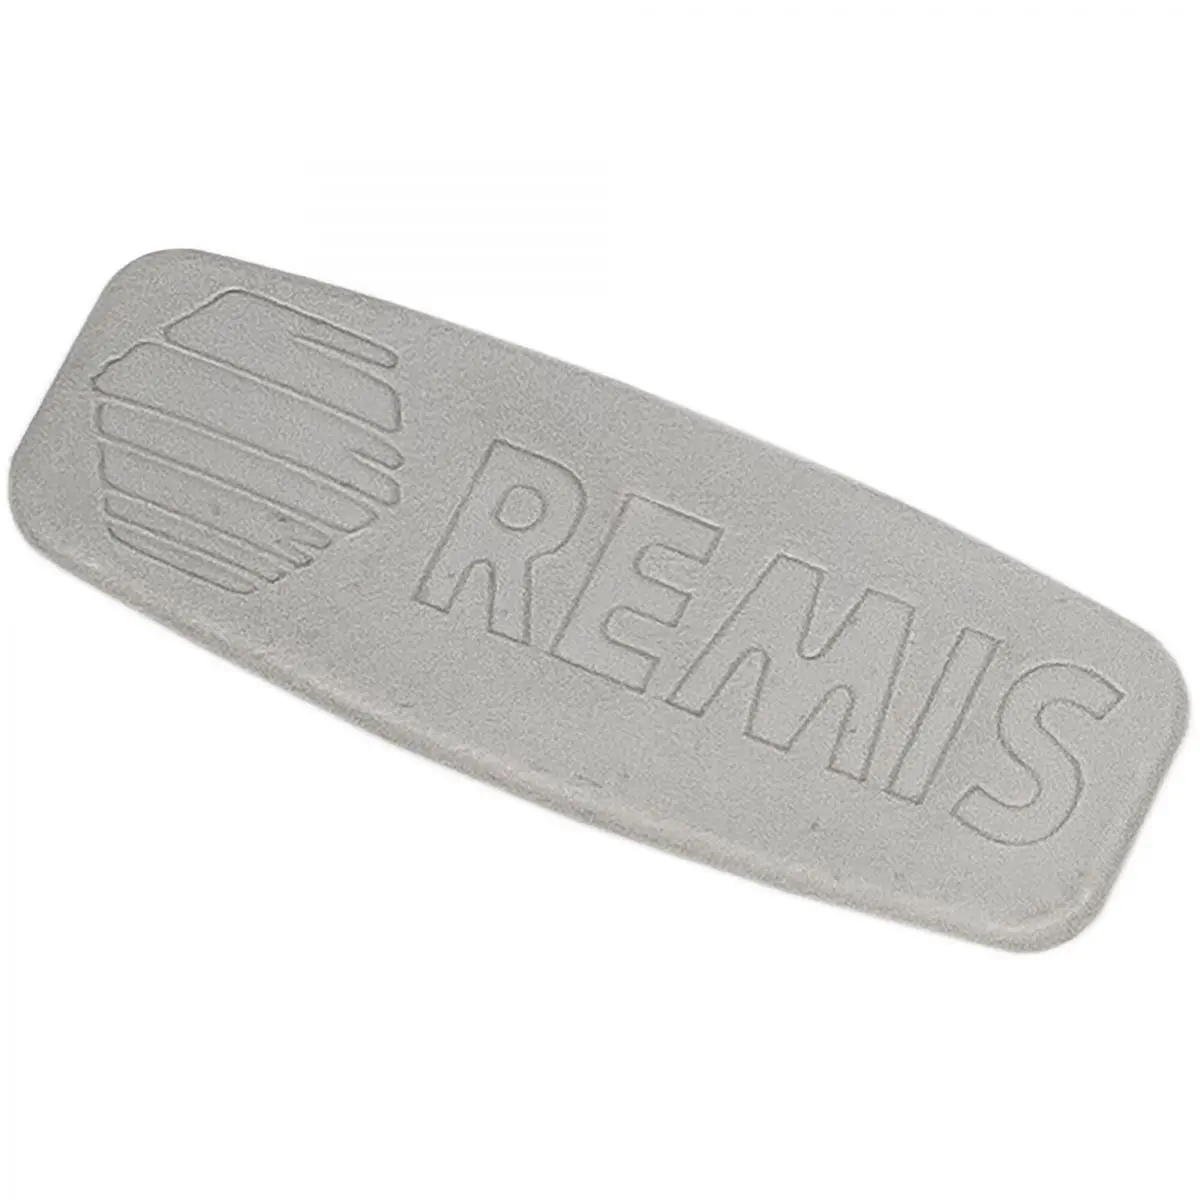 Șapcă cu sigla REMIS, gri deschis pentru REMIfront IV